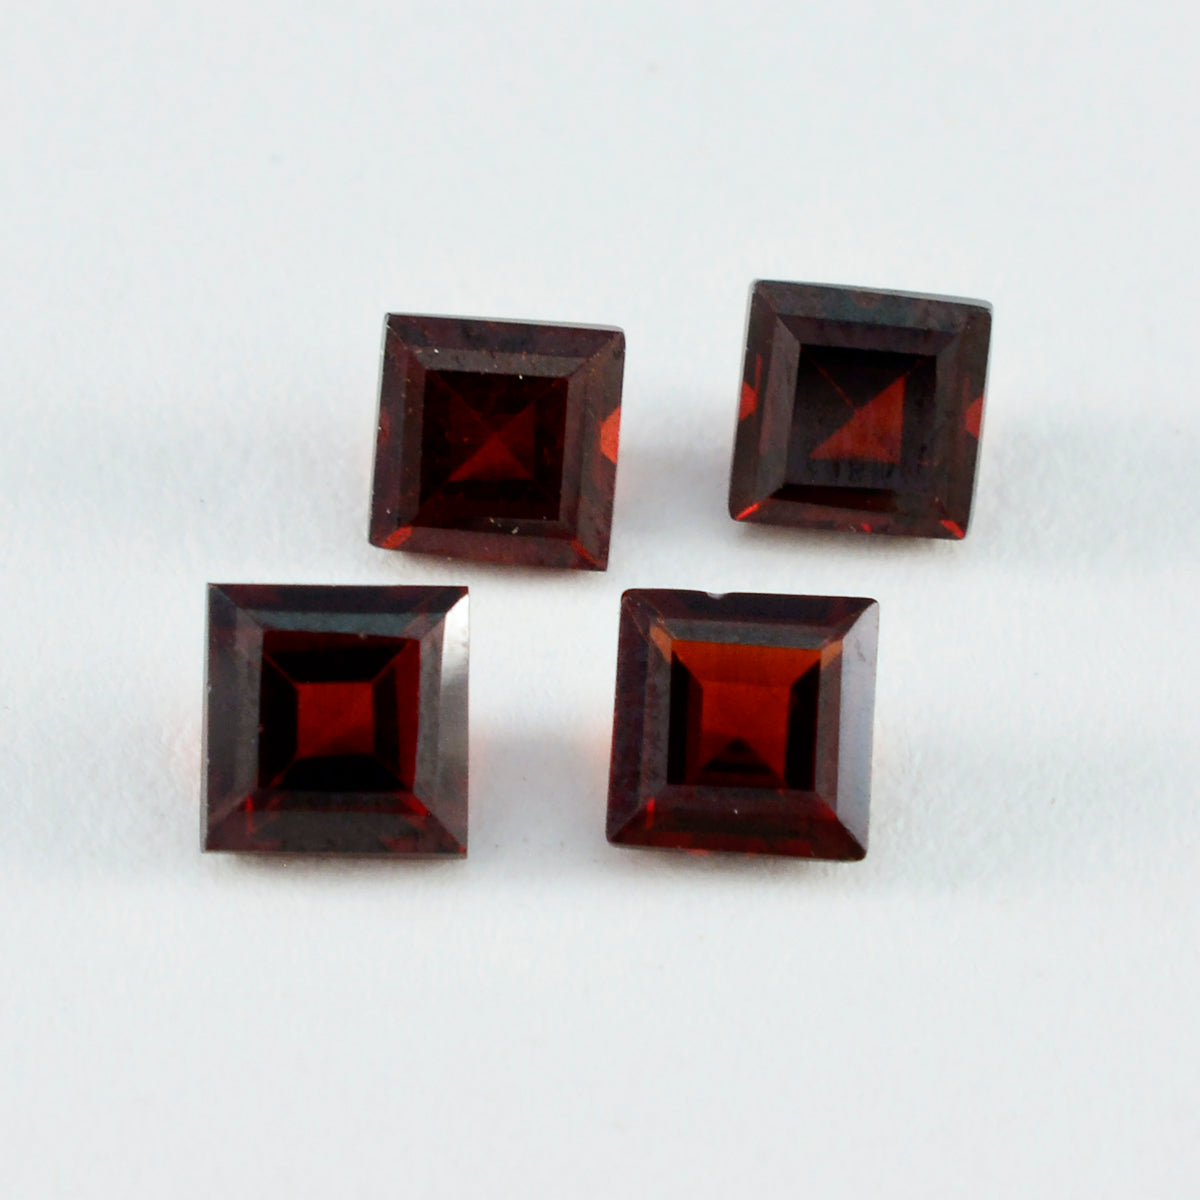 riyogems 1 шт. натуральный красный гранат ограненный 12x12 мм квадратной формы отличное качество свободный драгоценный камень